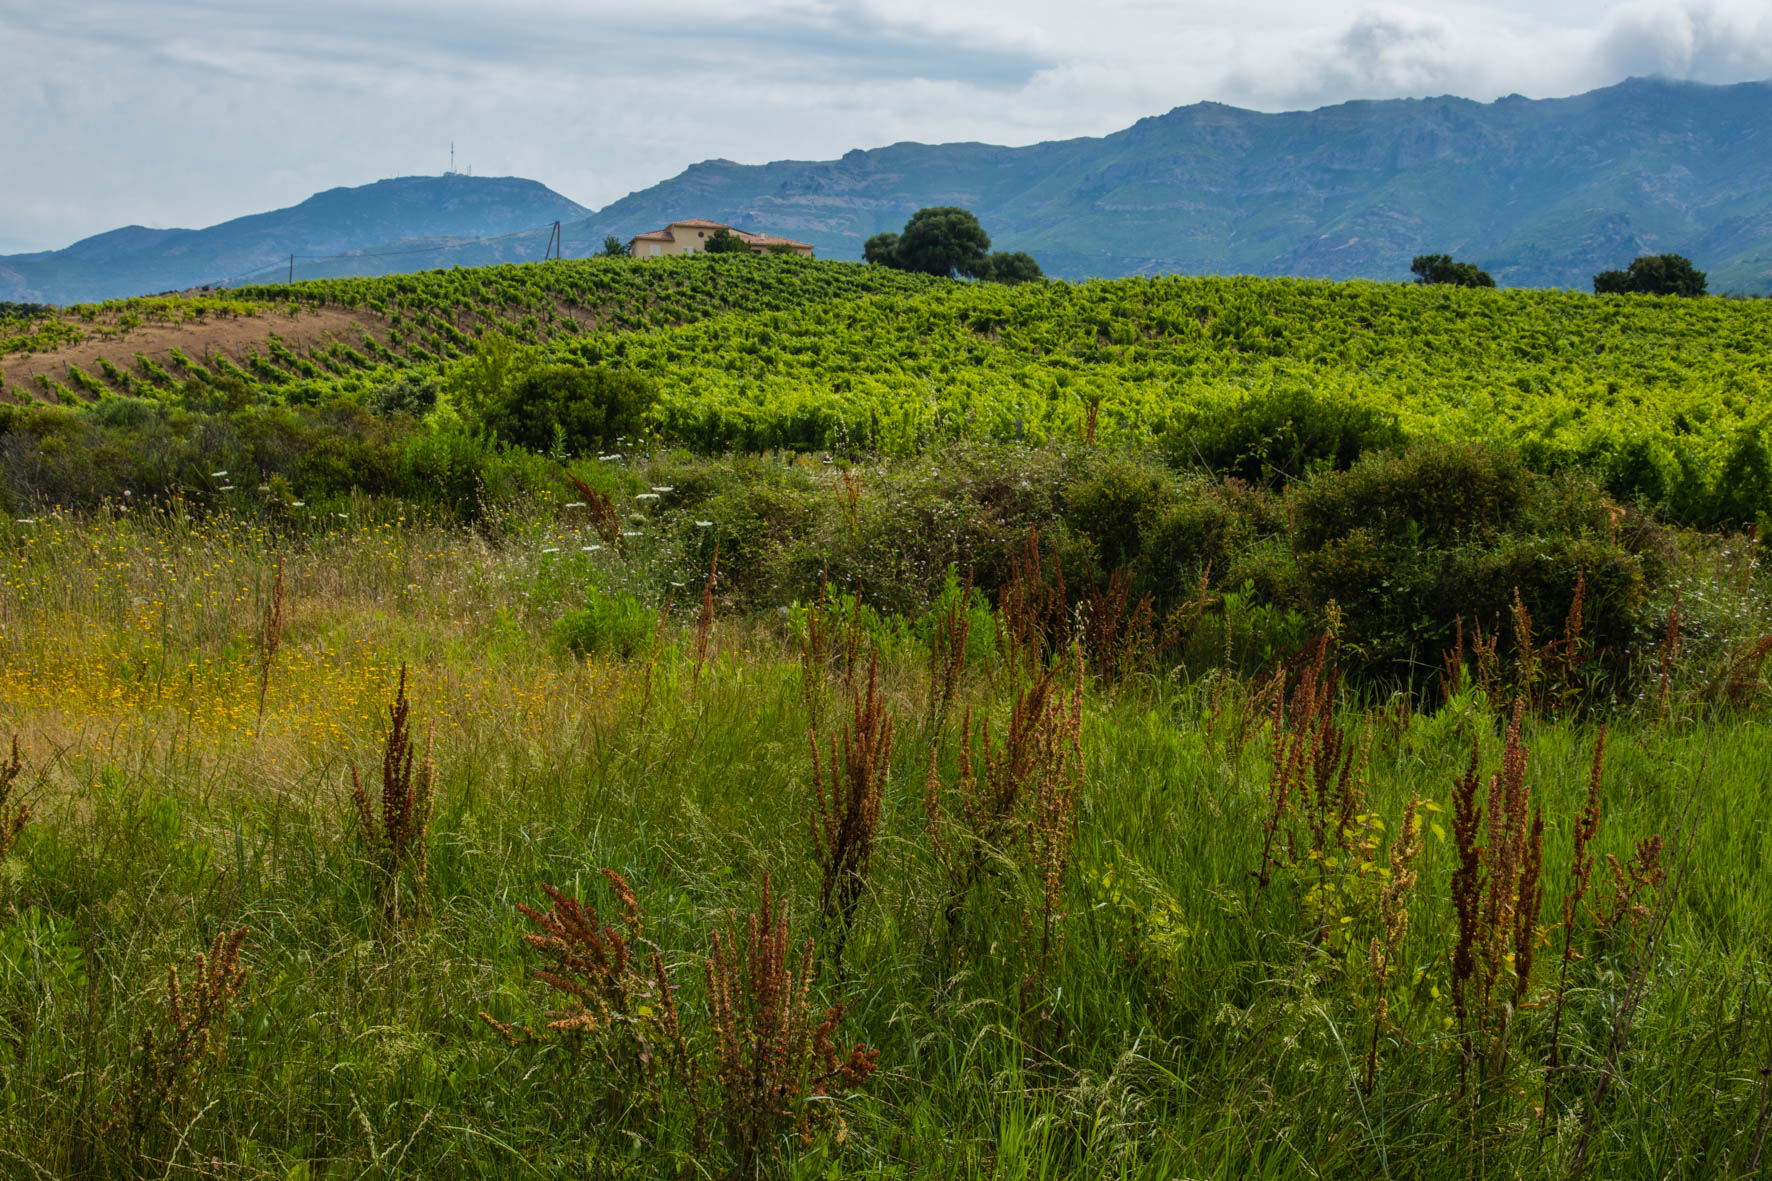 Oletta, vineyard in Corsica. Wijngaarden.